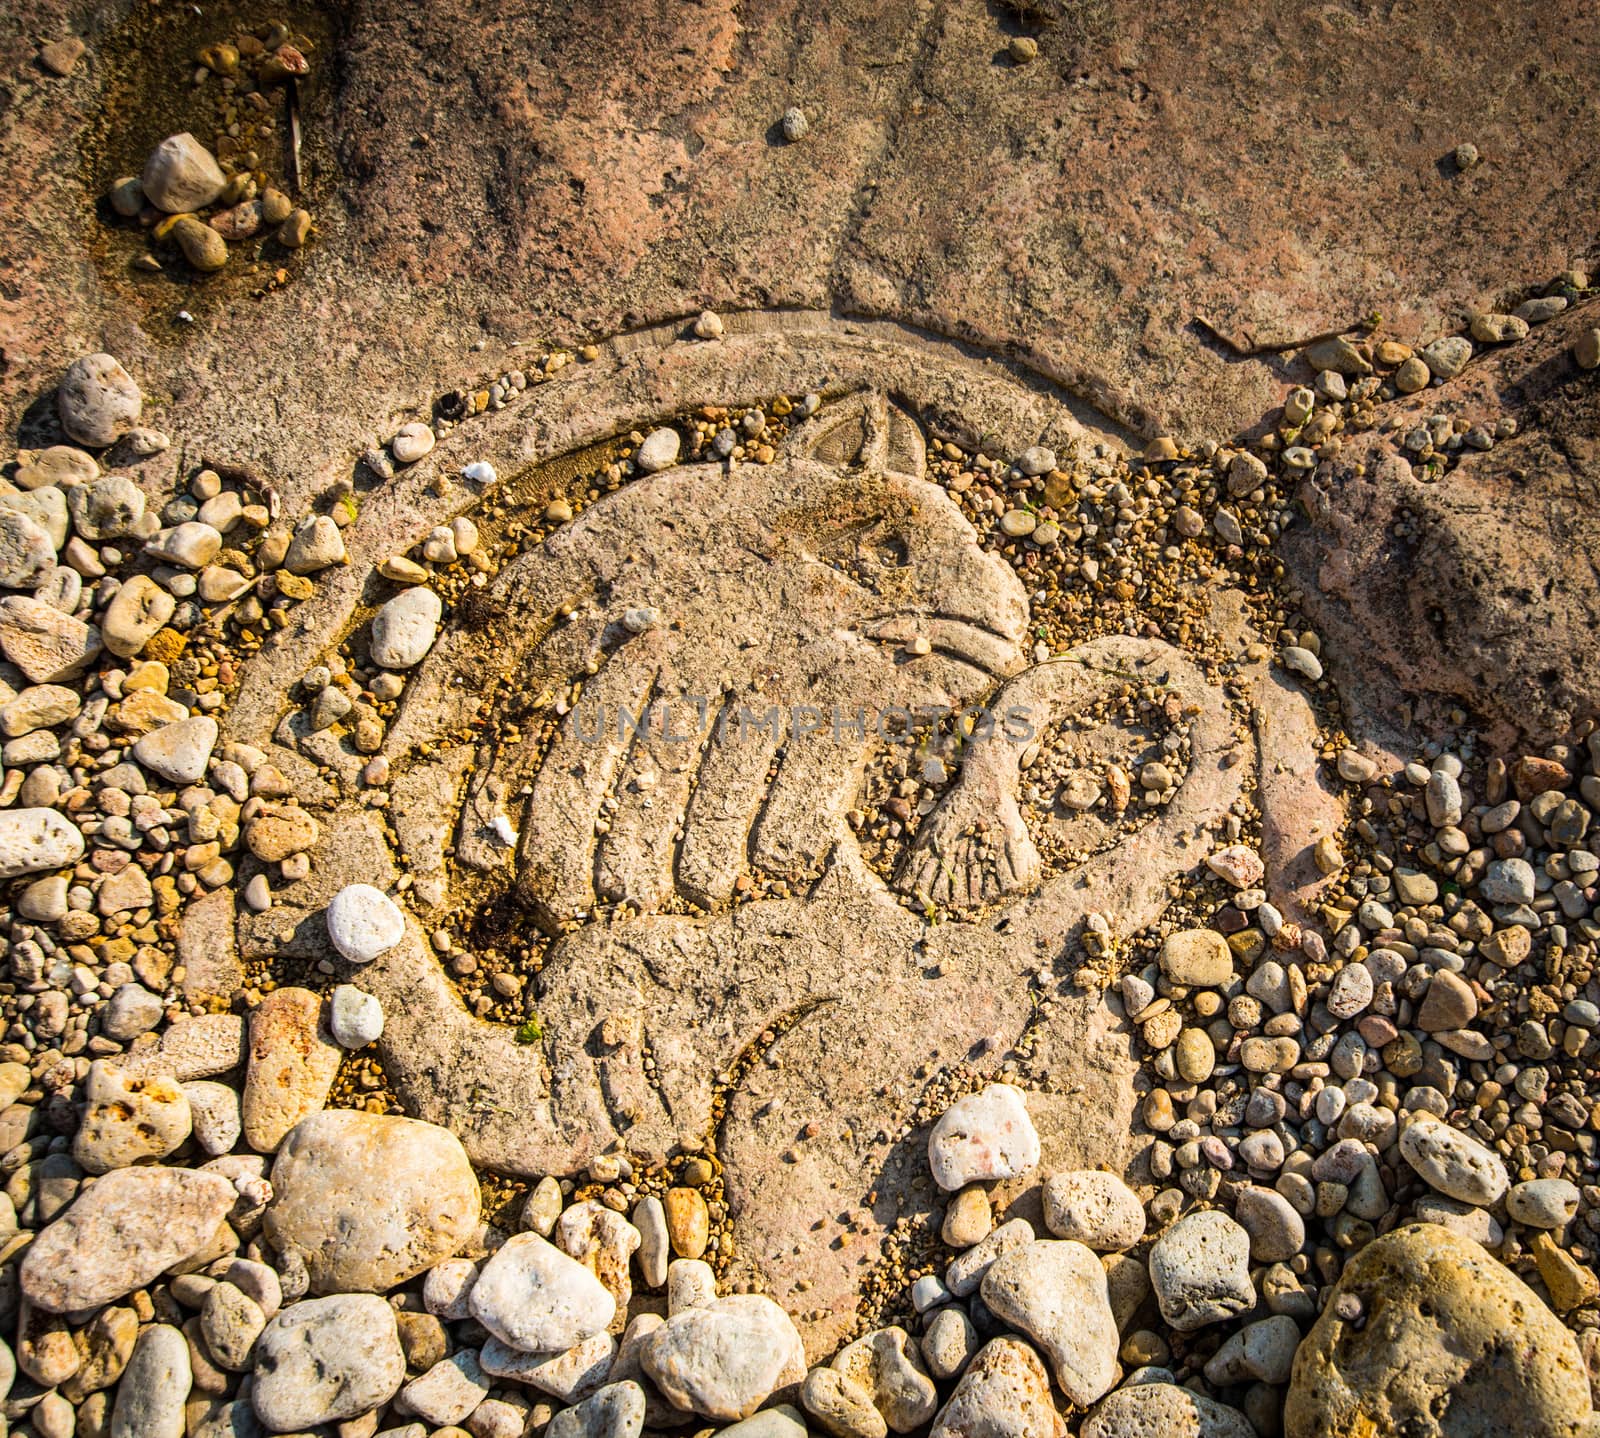 Rock carvings on the beach (animal with a lion's body) near Sevastopol (Crimea), Ukraine, May 2013